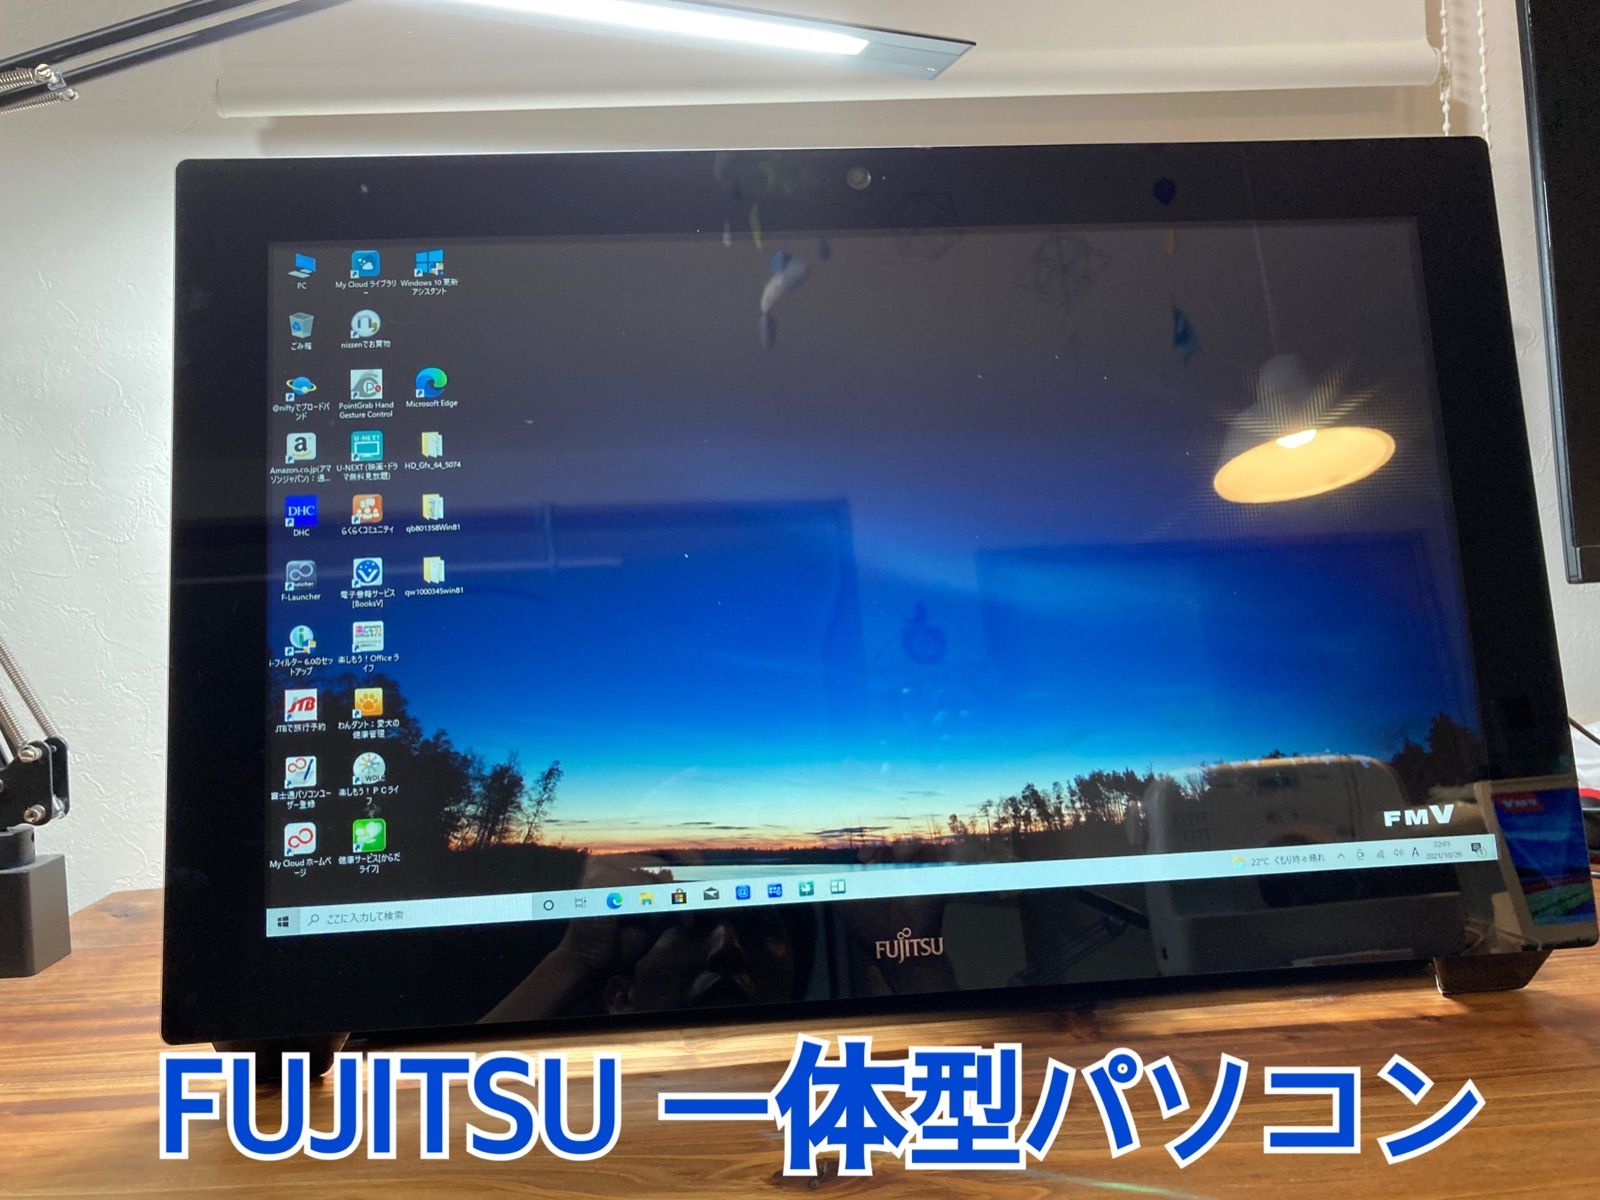 富士通 FUJITSU 一体型PC WH77/M - パソコンショップ パロ - メルカリ